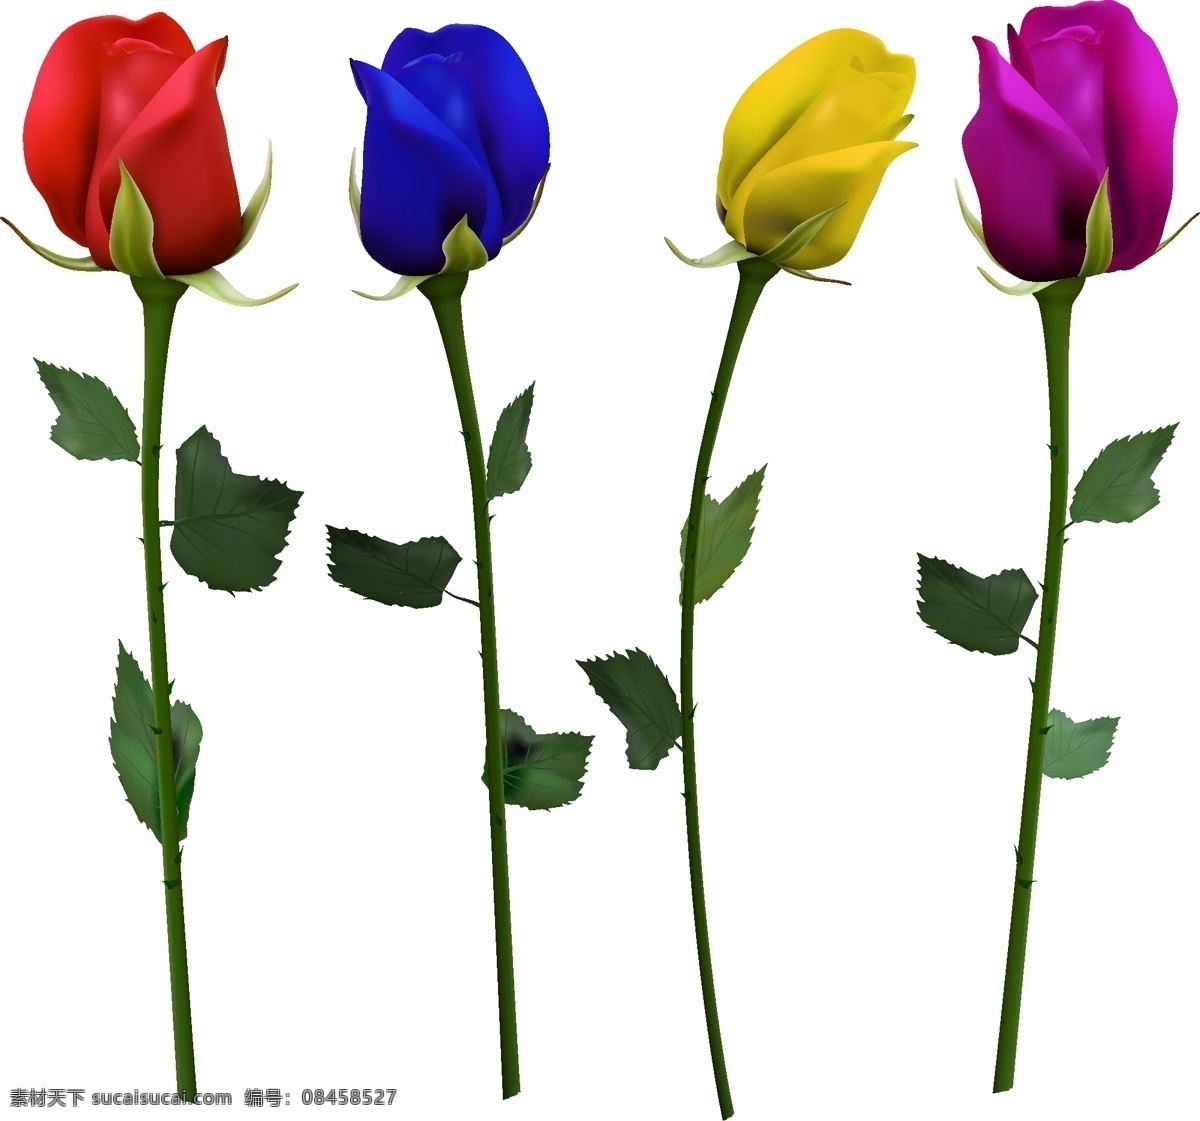 彩色 玫瑰花 红玫瑰 蓝玫瑰 黄玫瑰 紫玫瑰 植物 矢量 高清图片